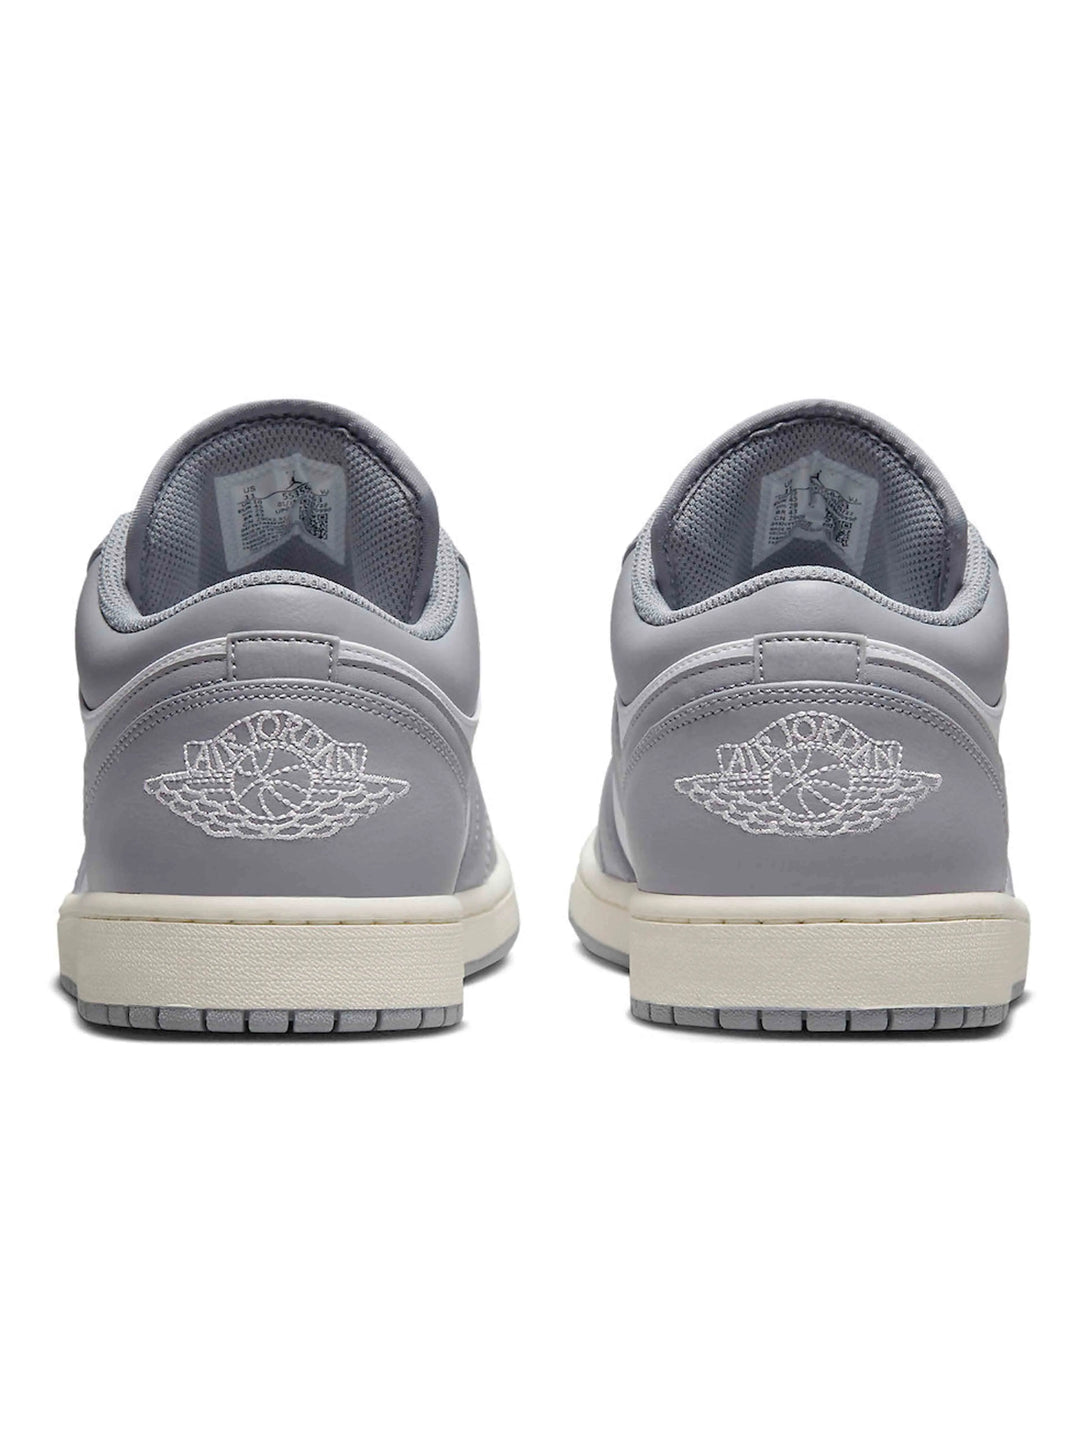 Nike Air Jordan 1 Low Vintage Grey (GS) Prior